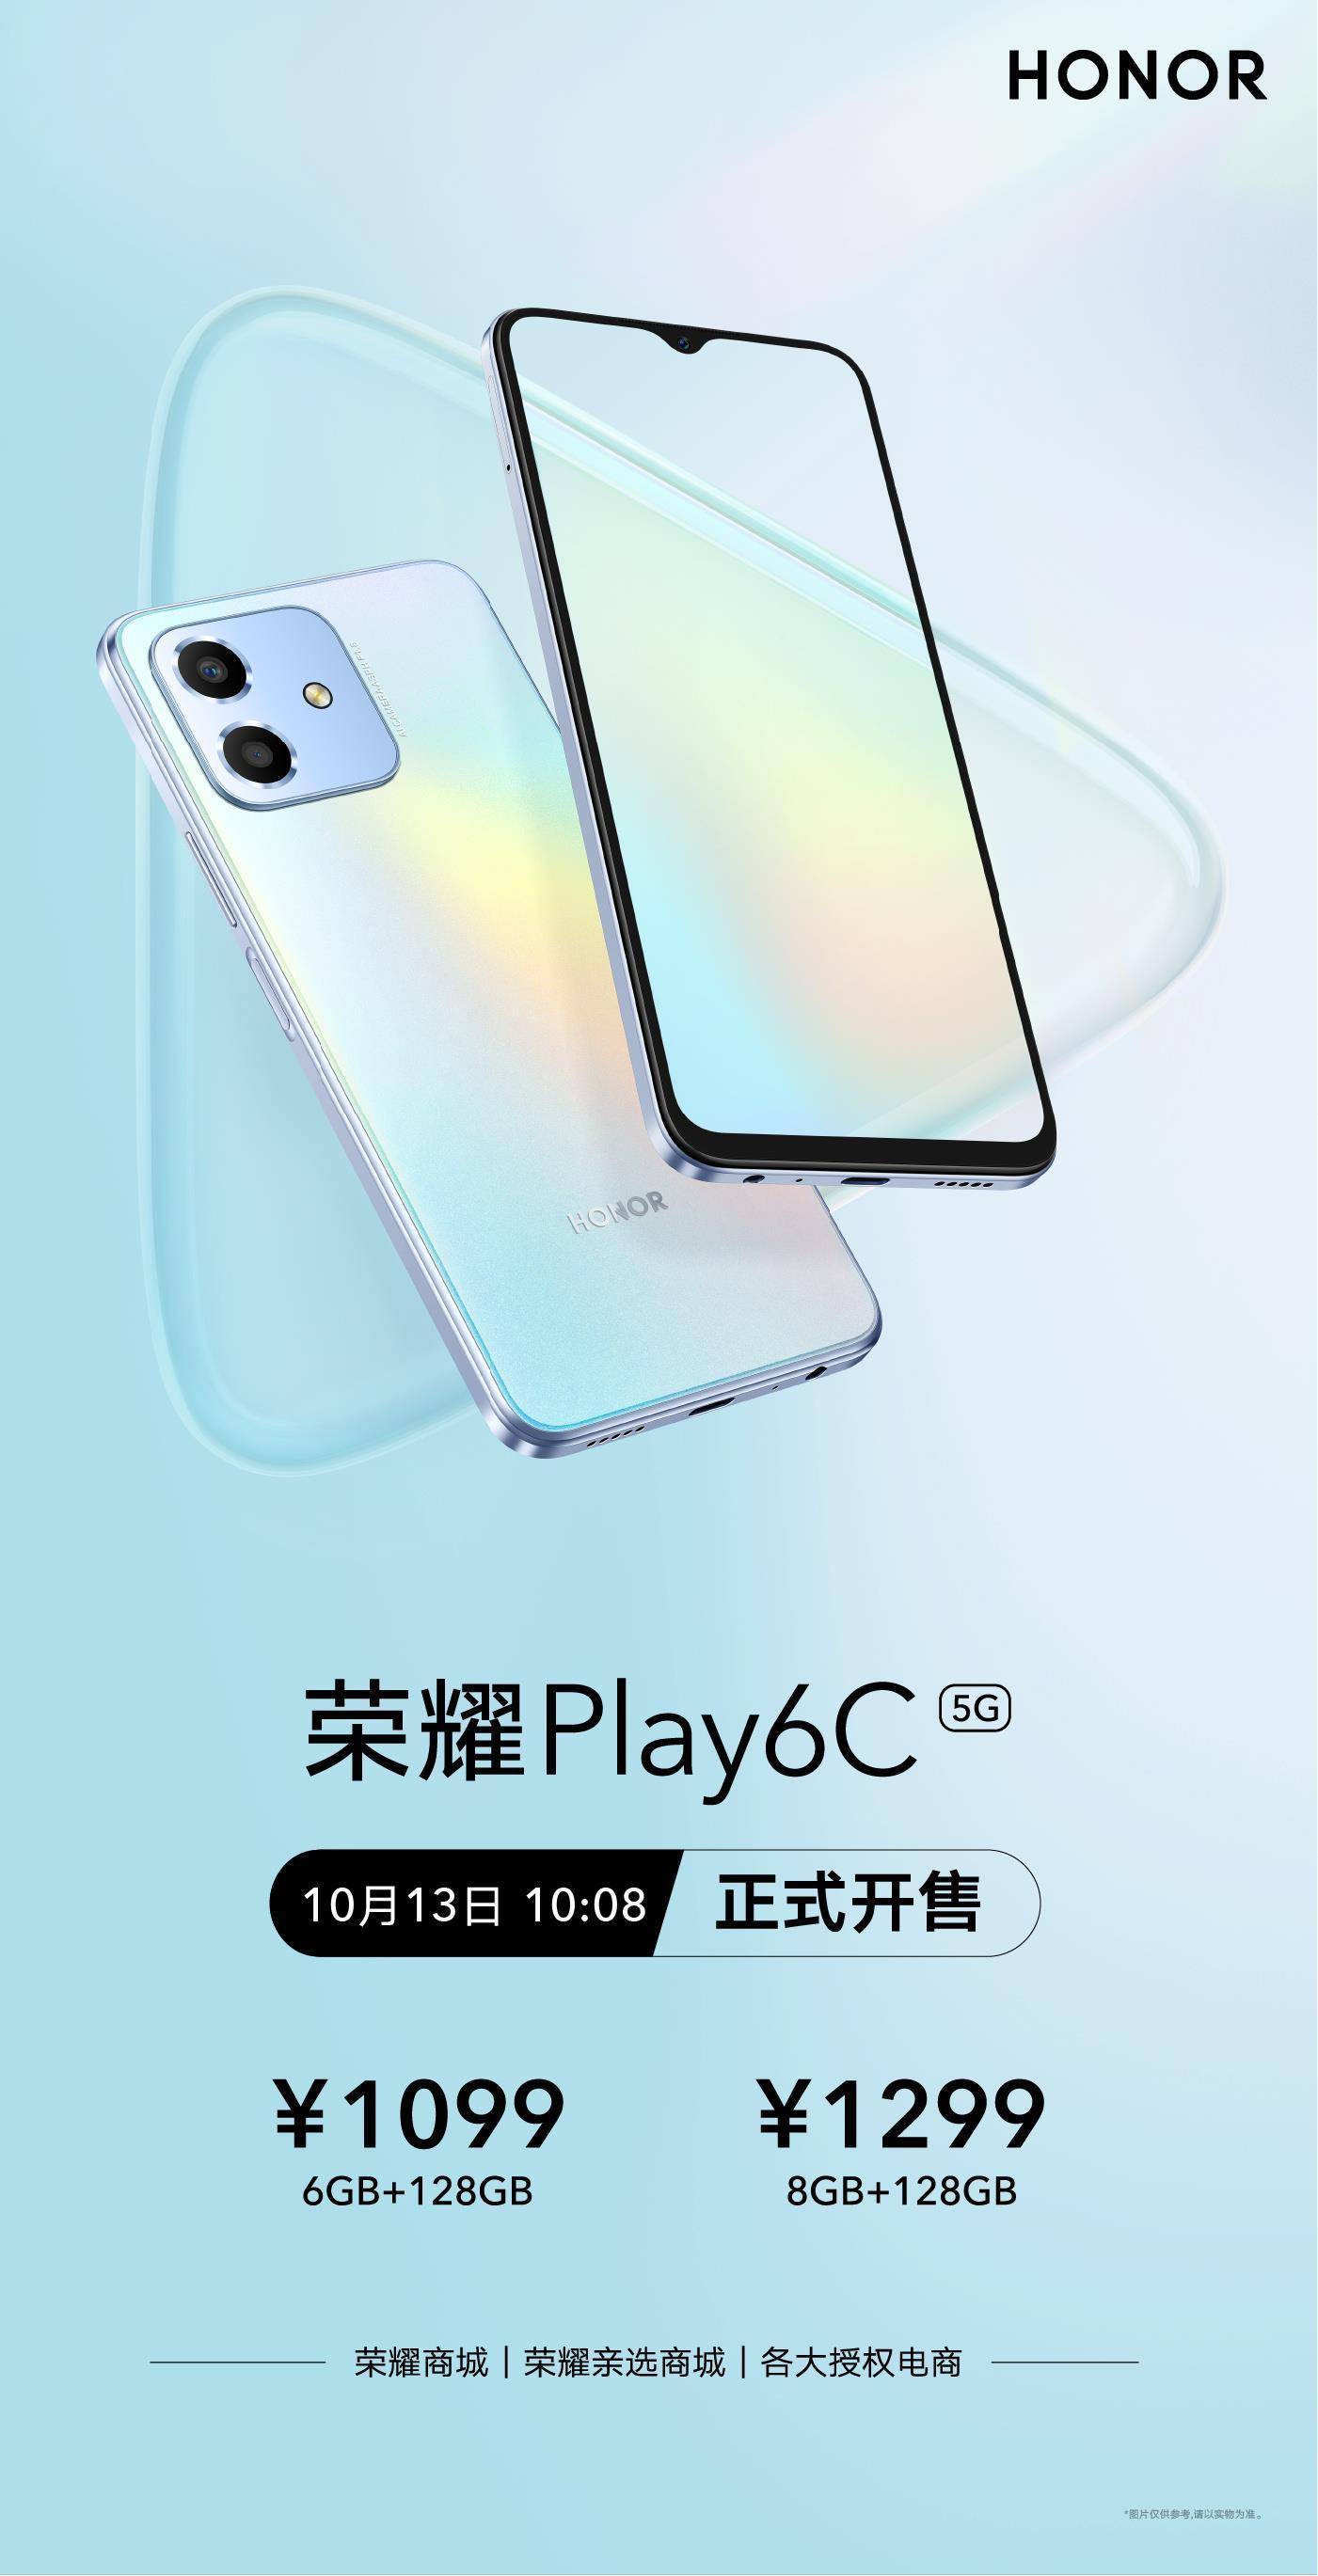 长续航护眼屏仅1099元 高品质5G手机荣耀Play6C首销